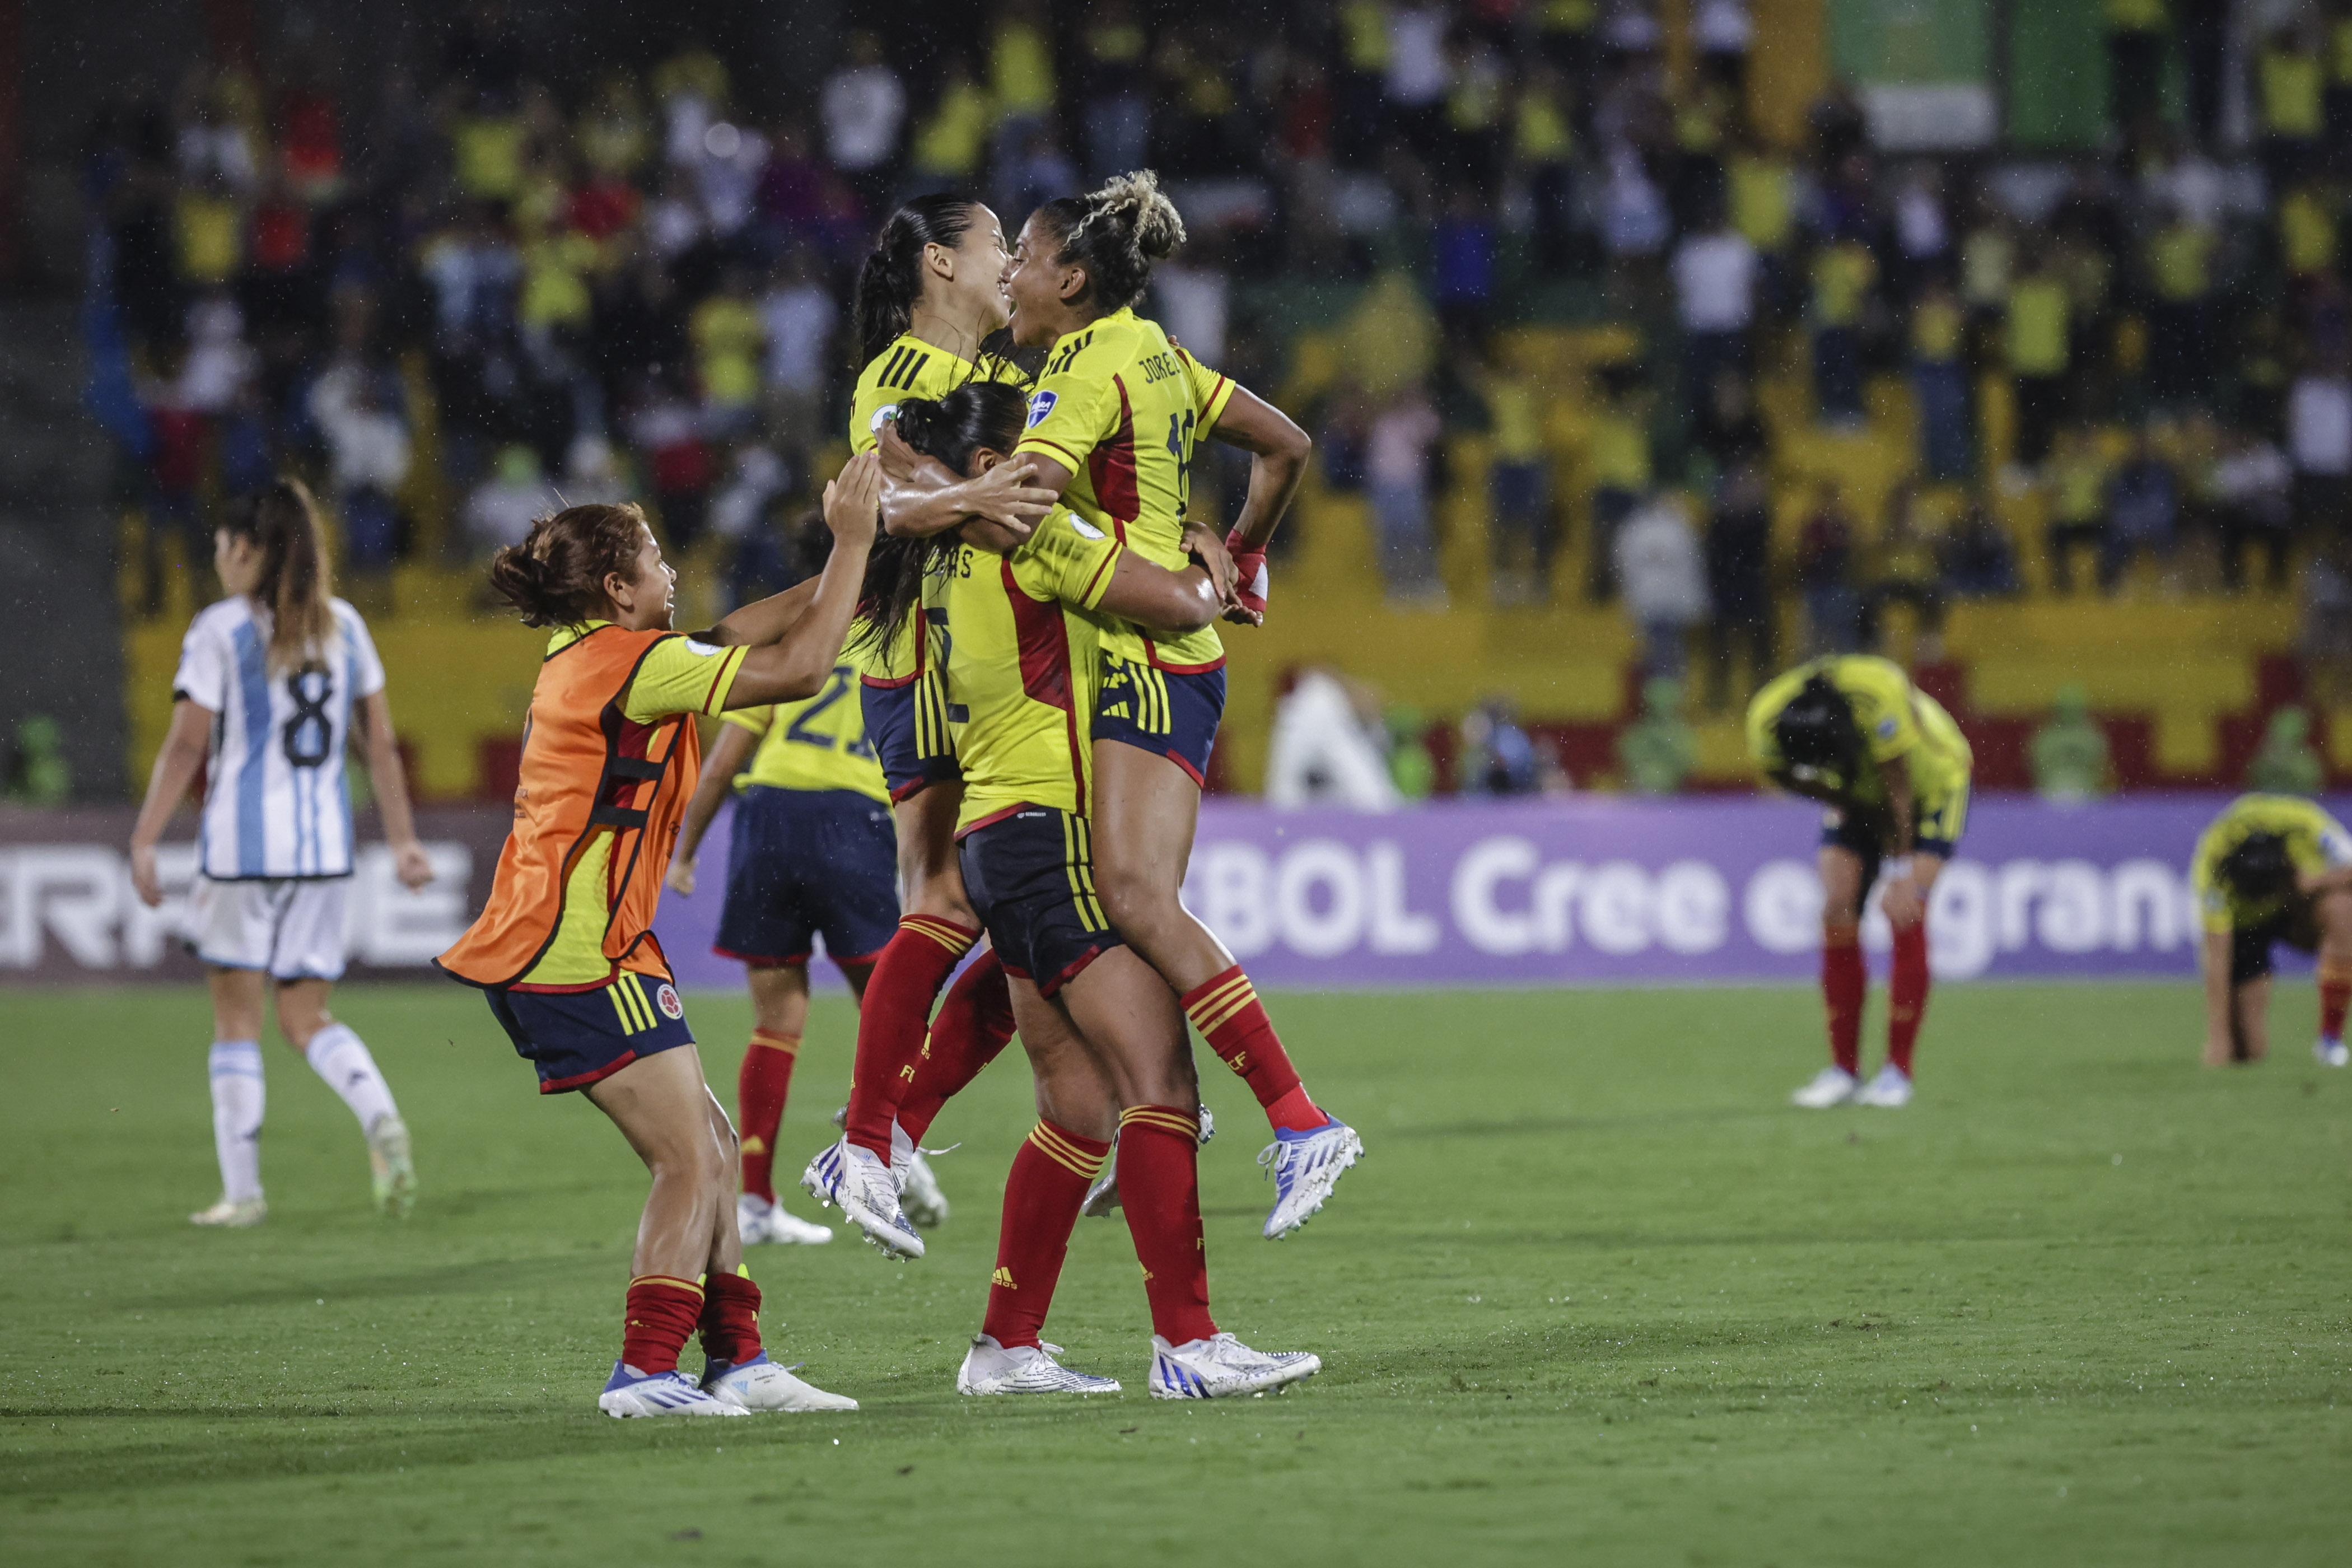 La selección Colombia femenina se medirá en la W Revelations Cup 2023 a México, Costa Rica y Nigeria. Imagen Colprensa.